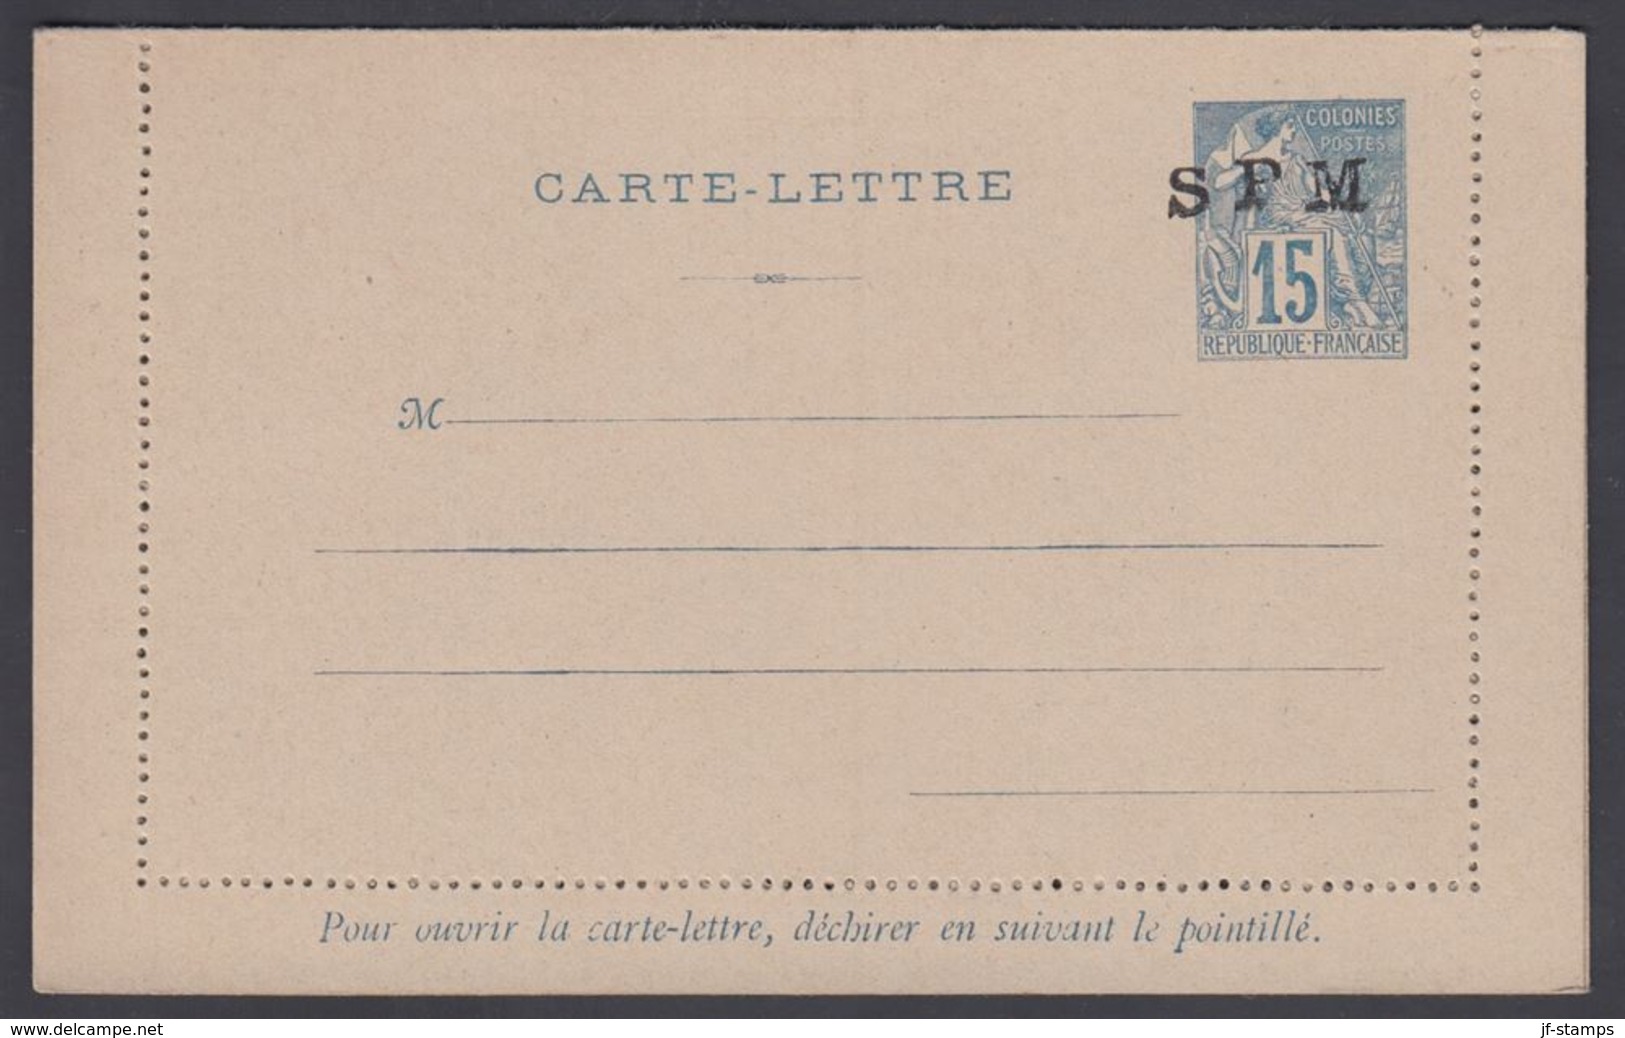 1892. SAINT-PIERRE-MIQUELON. CARTE -LETTRE SPM / 15 C. COLONIES POSTES REP. FRANCAISE... () - JF321815 - Covers & Documents